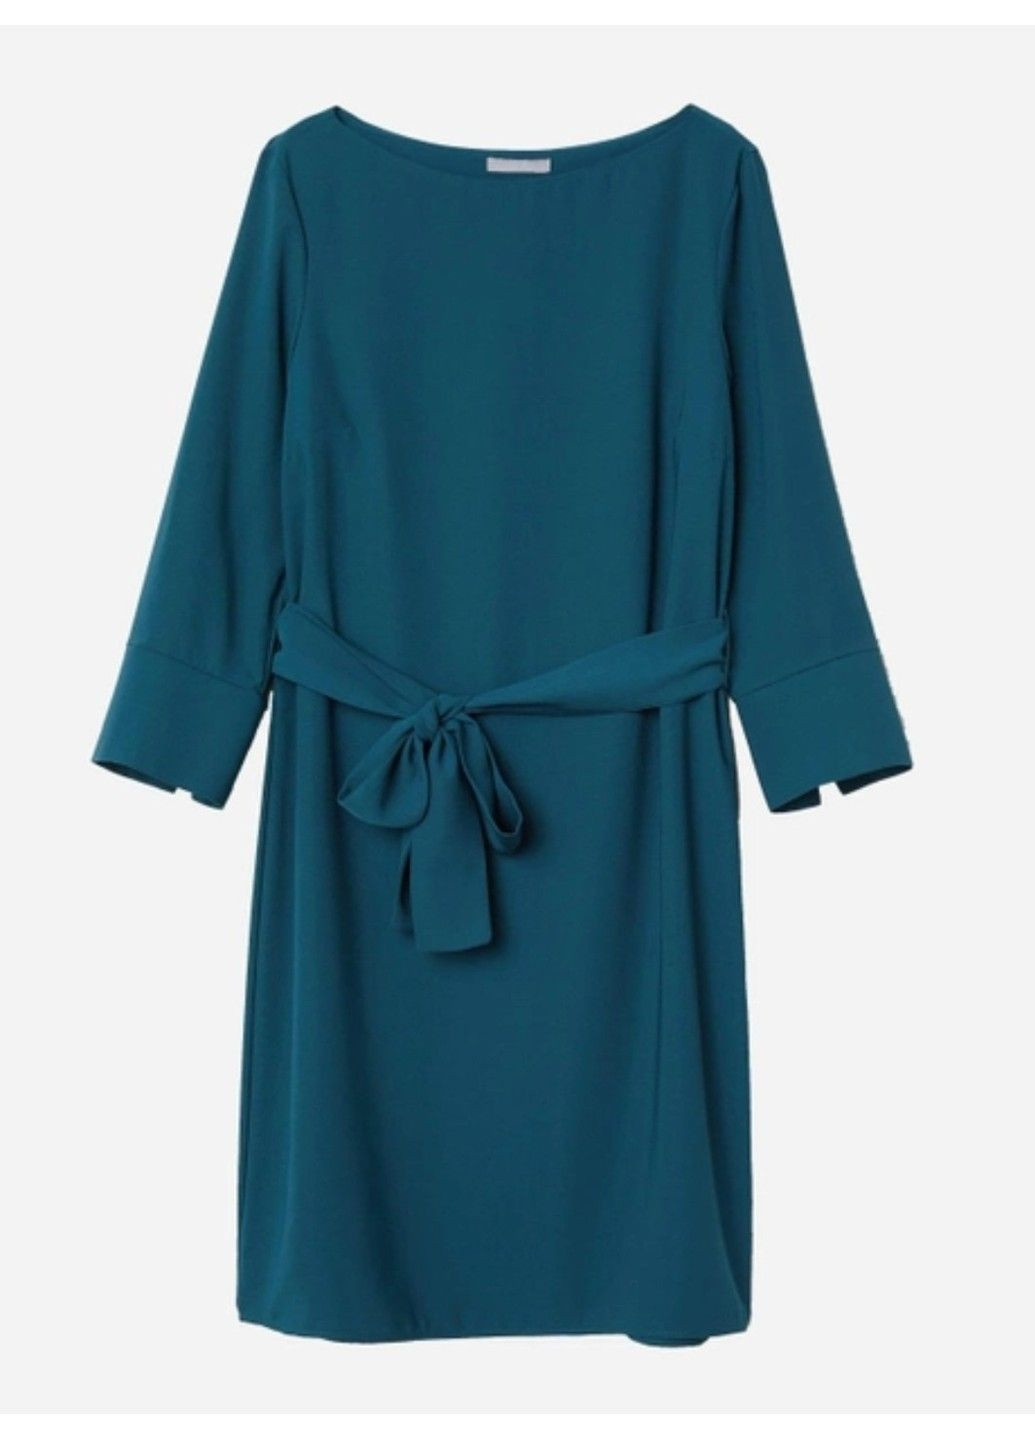 Темно-синее деловое женское платье с поясом н&м (56733) xs темно-синее H&M